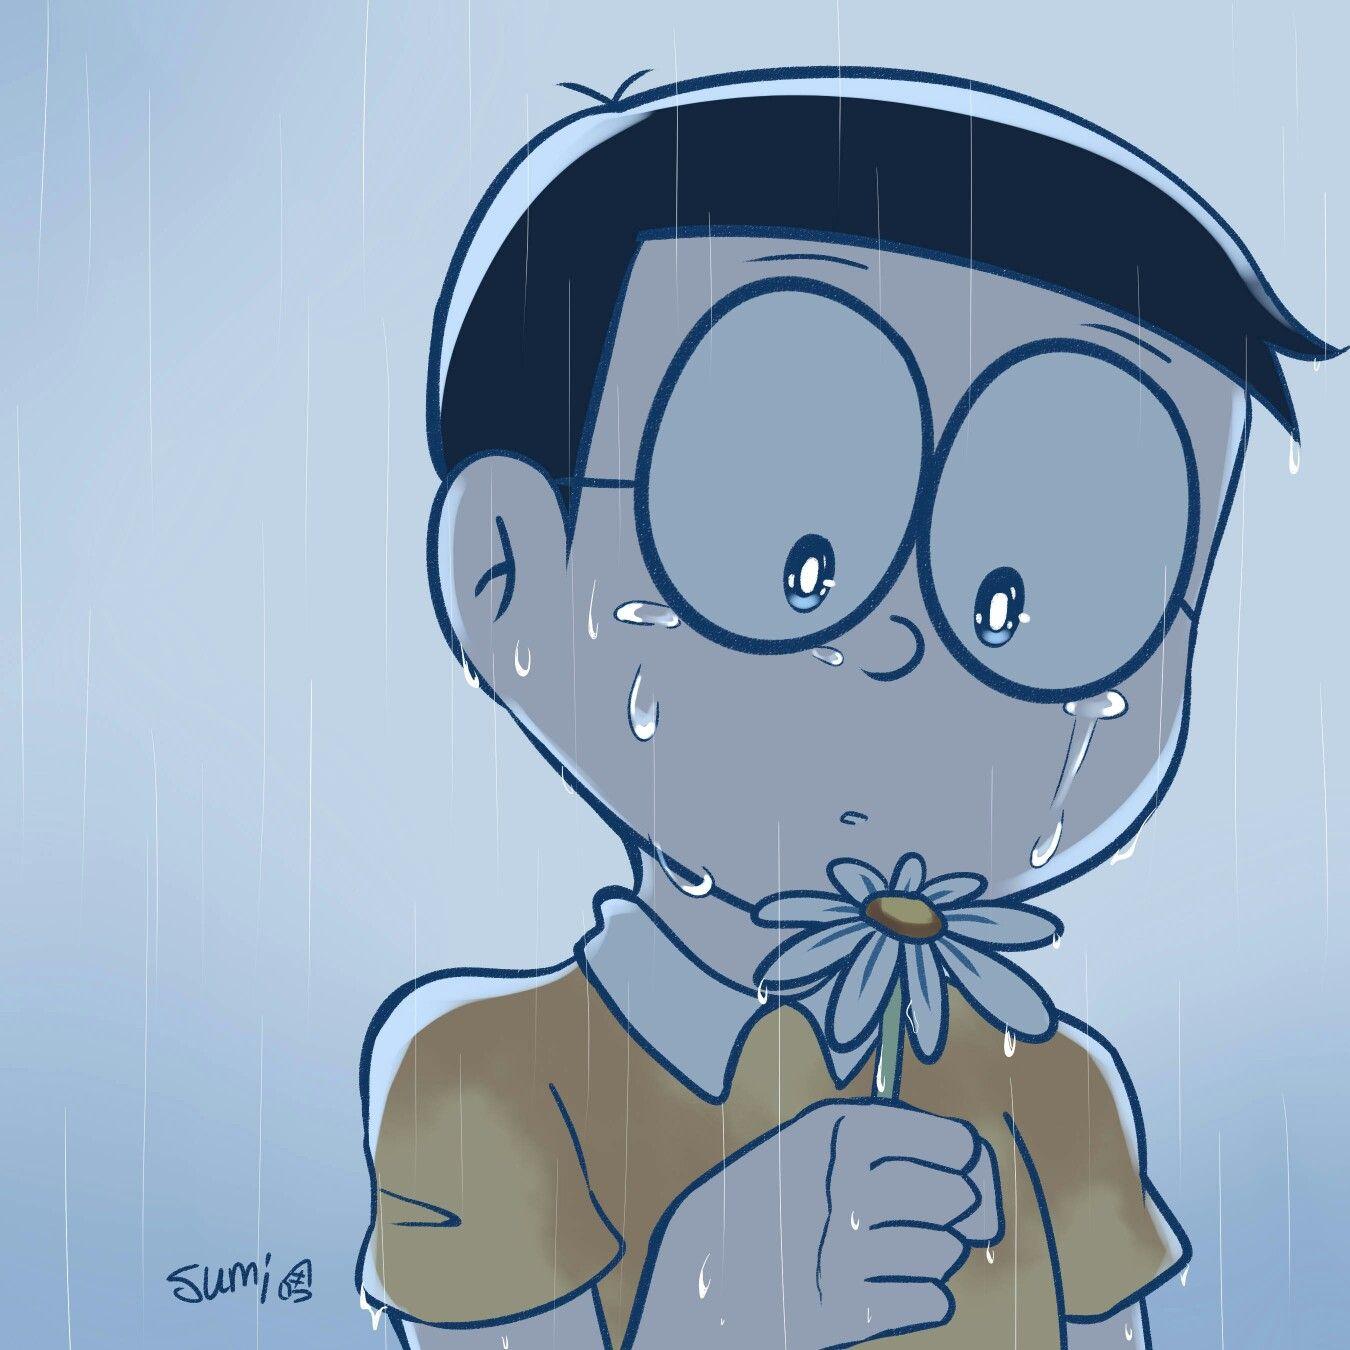 Sad Nobita Wallpapers - Top Free Sad Nobita Backgrounds - WallpaperAccess